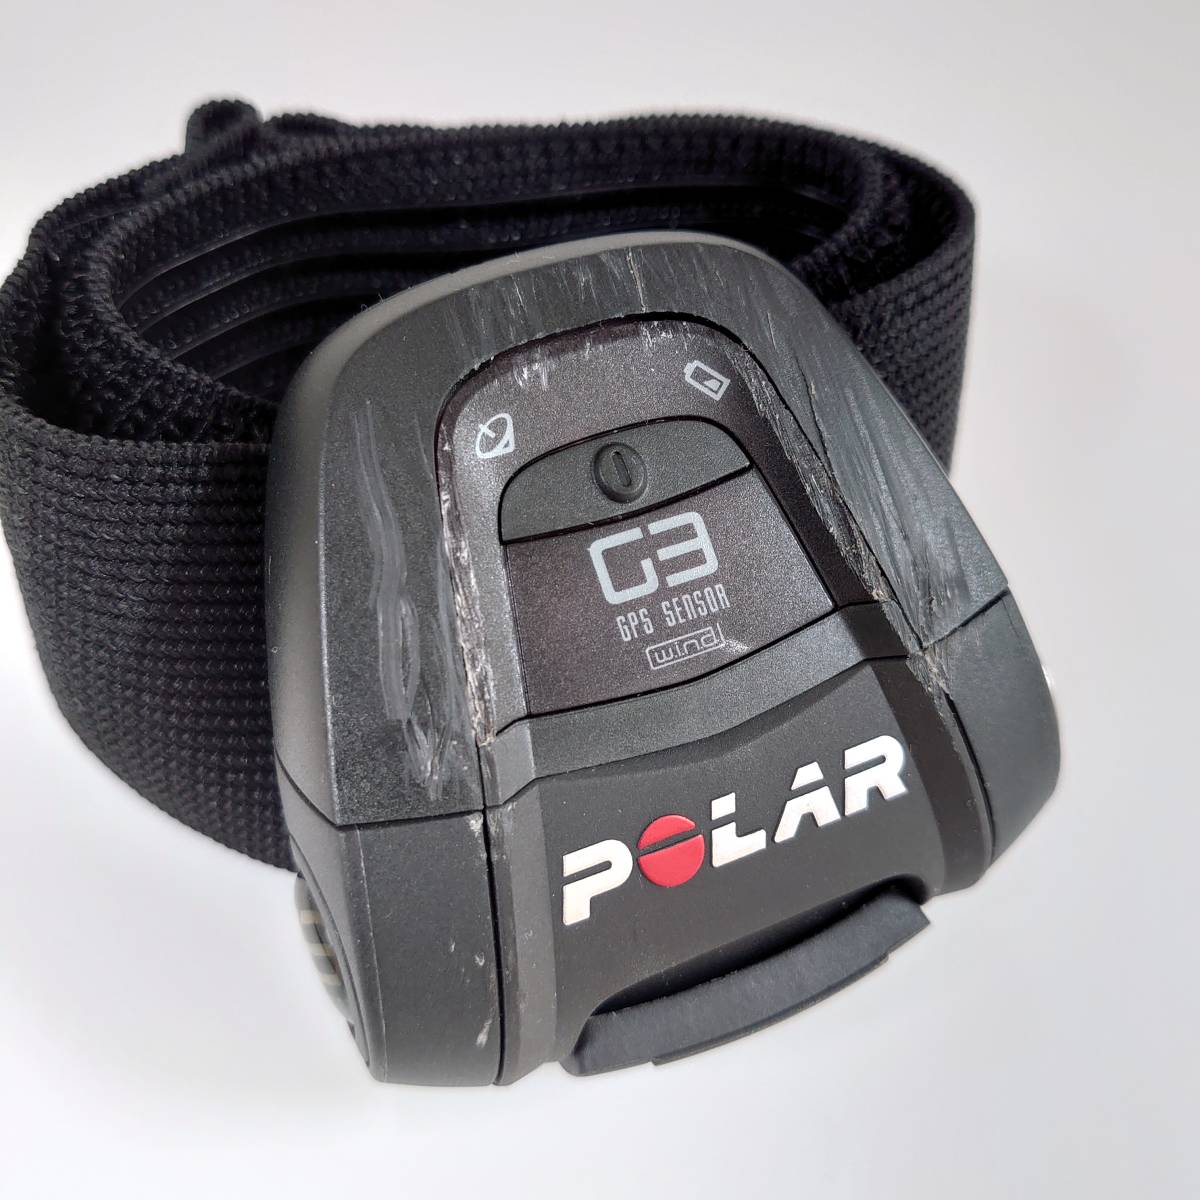 【中古 箱設あり】POLAR ポラール RS800CX ハートレートモニター 心拍計【動作確認済】